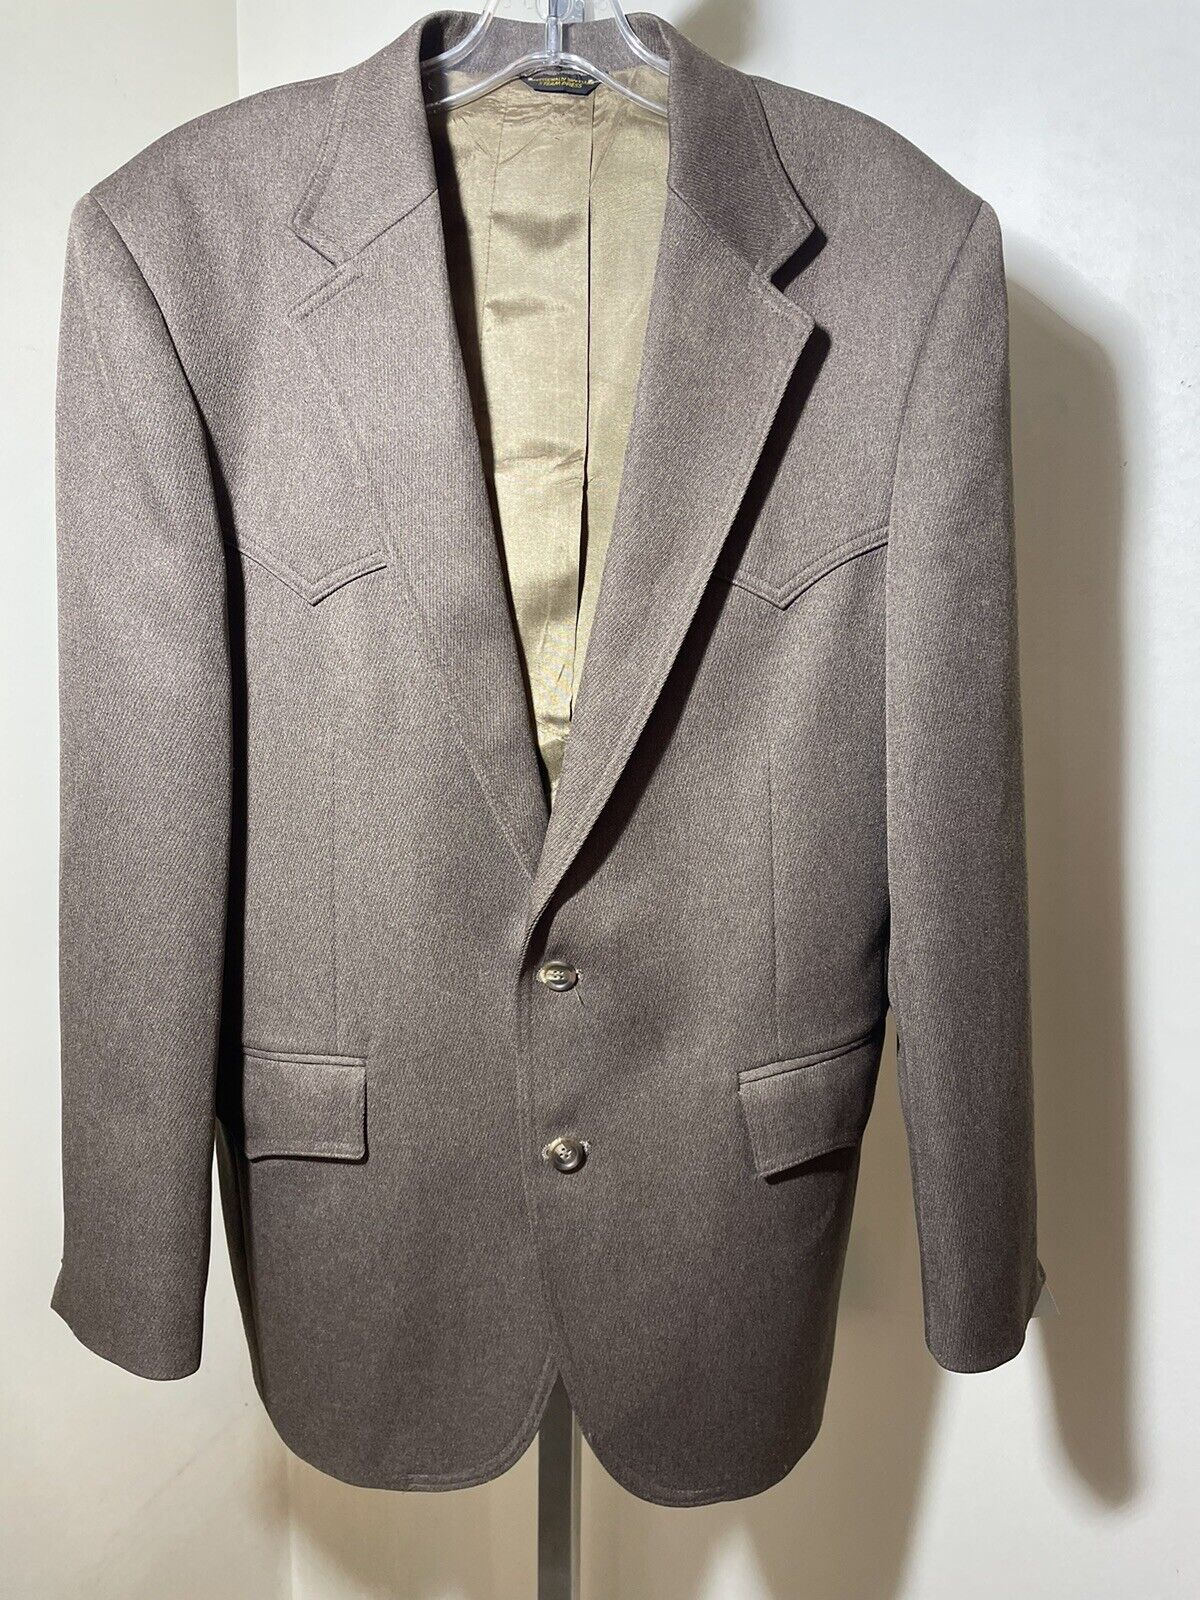 Vintage Levis Western Wear Suit Jacket Men's Size… - image 1